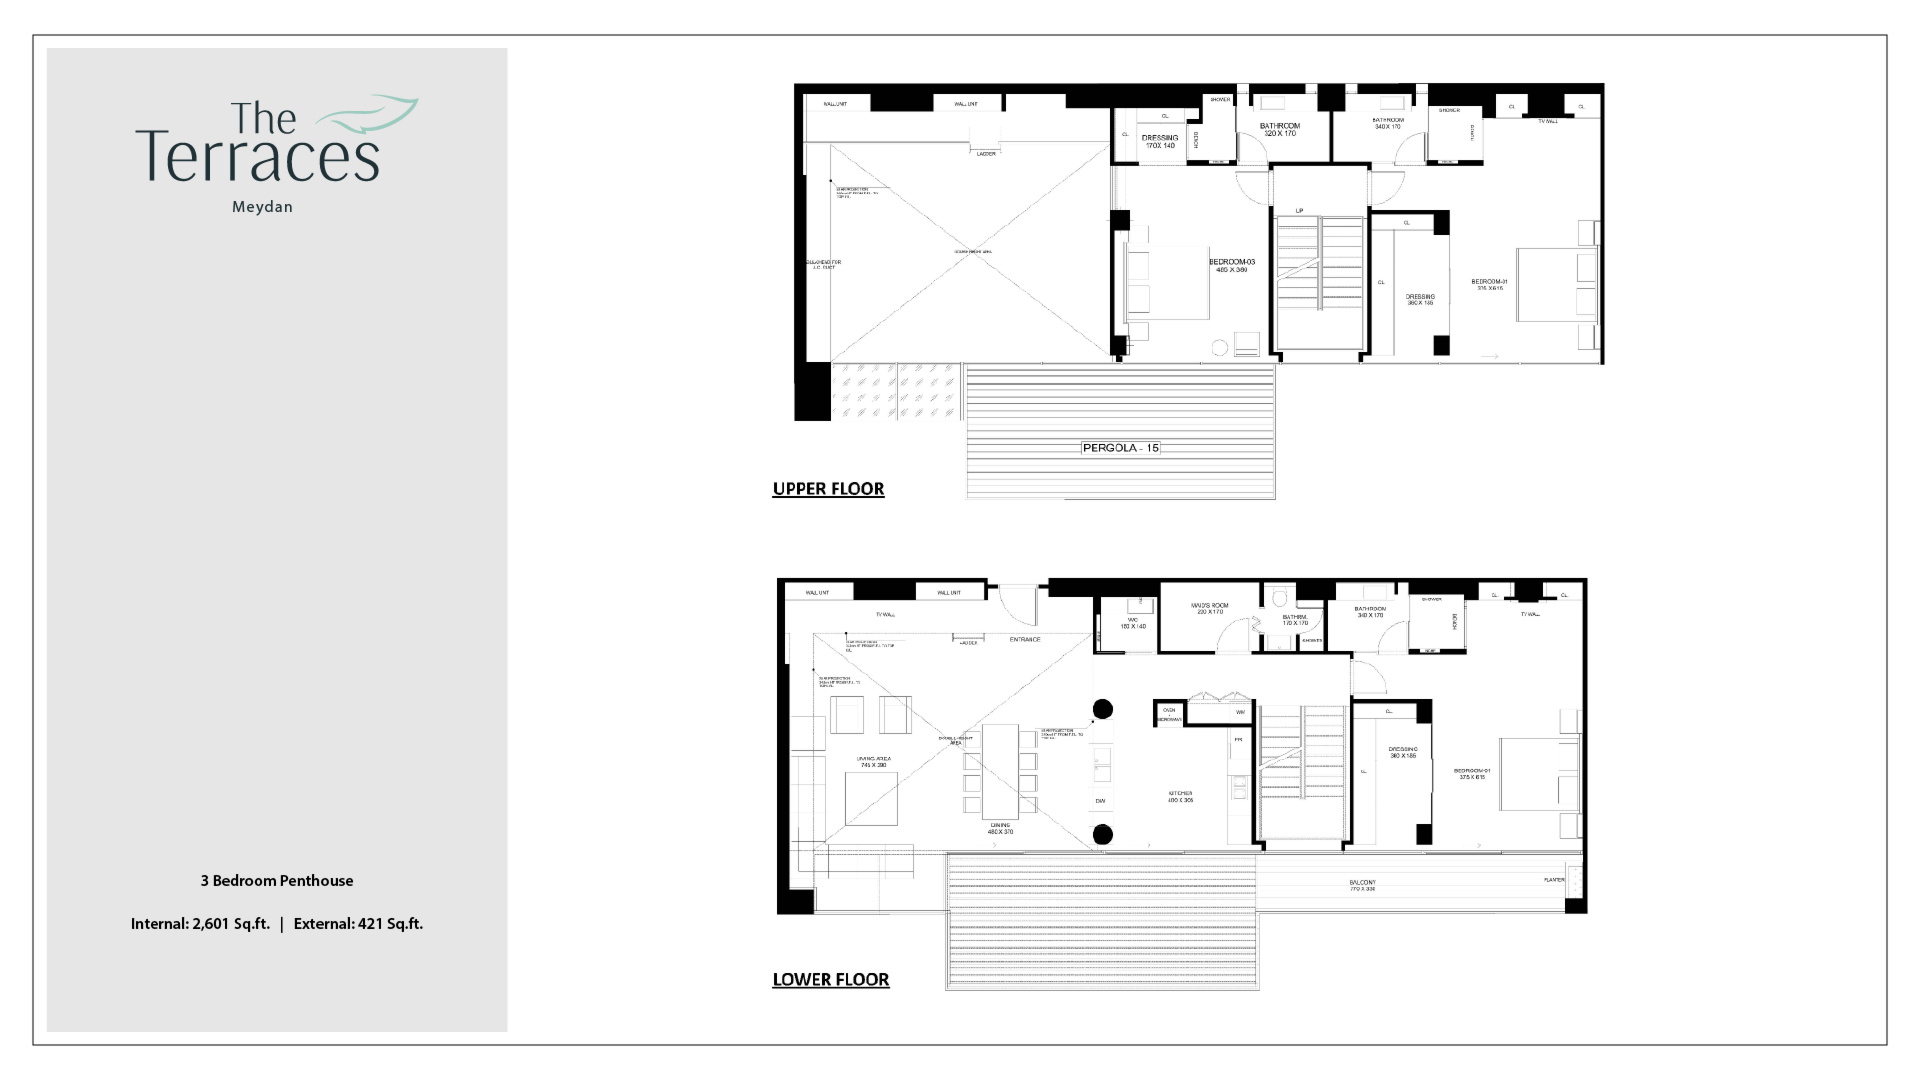 The Terraces 3 Bedroom Penthouse Floor Plan